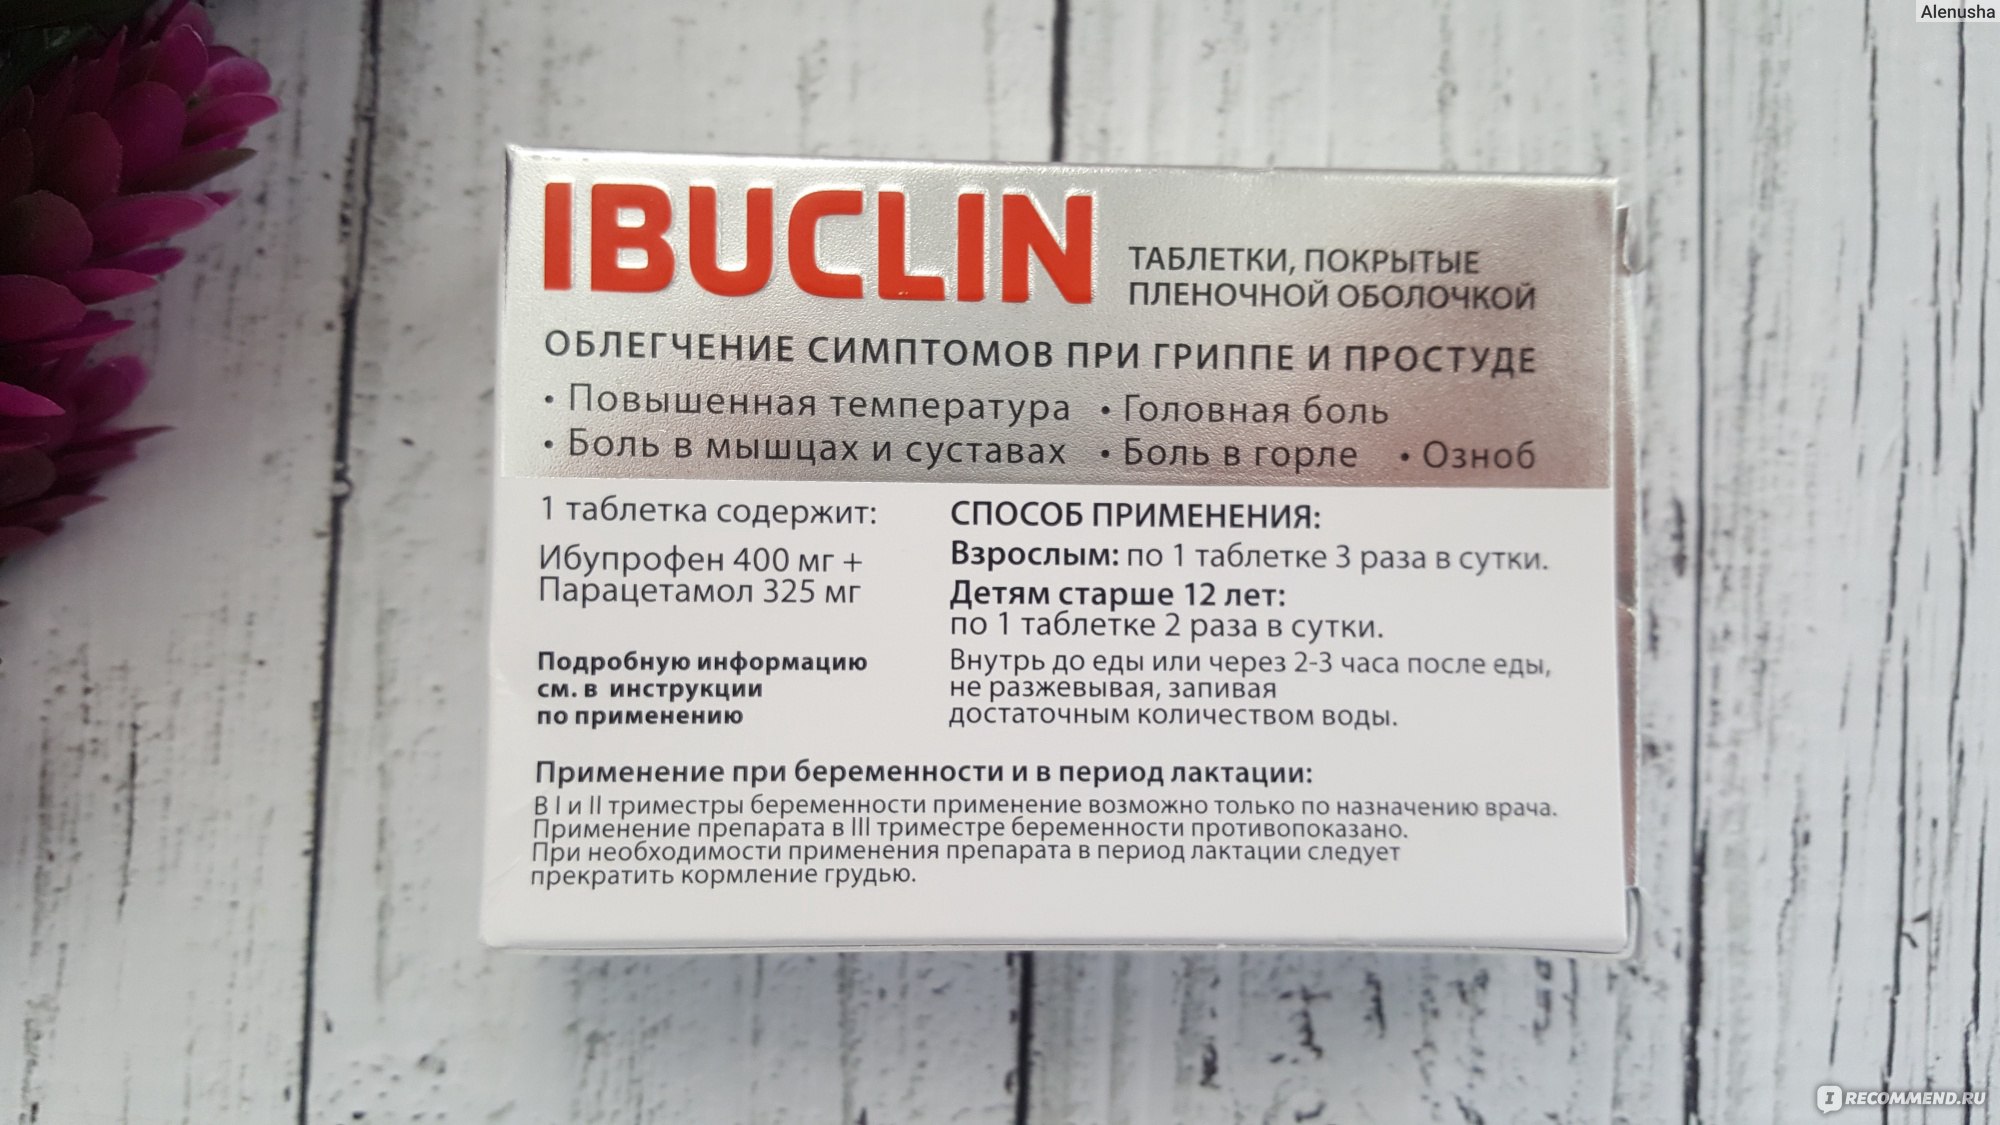 Можно пить ибуклин без температуры. Ибуклин таблетки покрытые пленочной оболочкой. Ибуклин на латыни. Ибуклин рецепт на латинском в таблетках. Ибуклин рецепт.